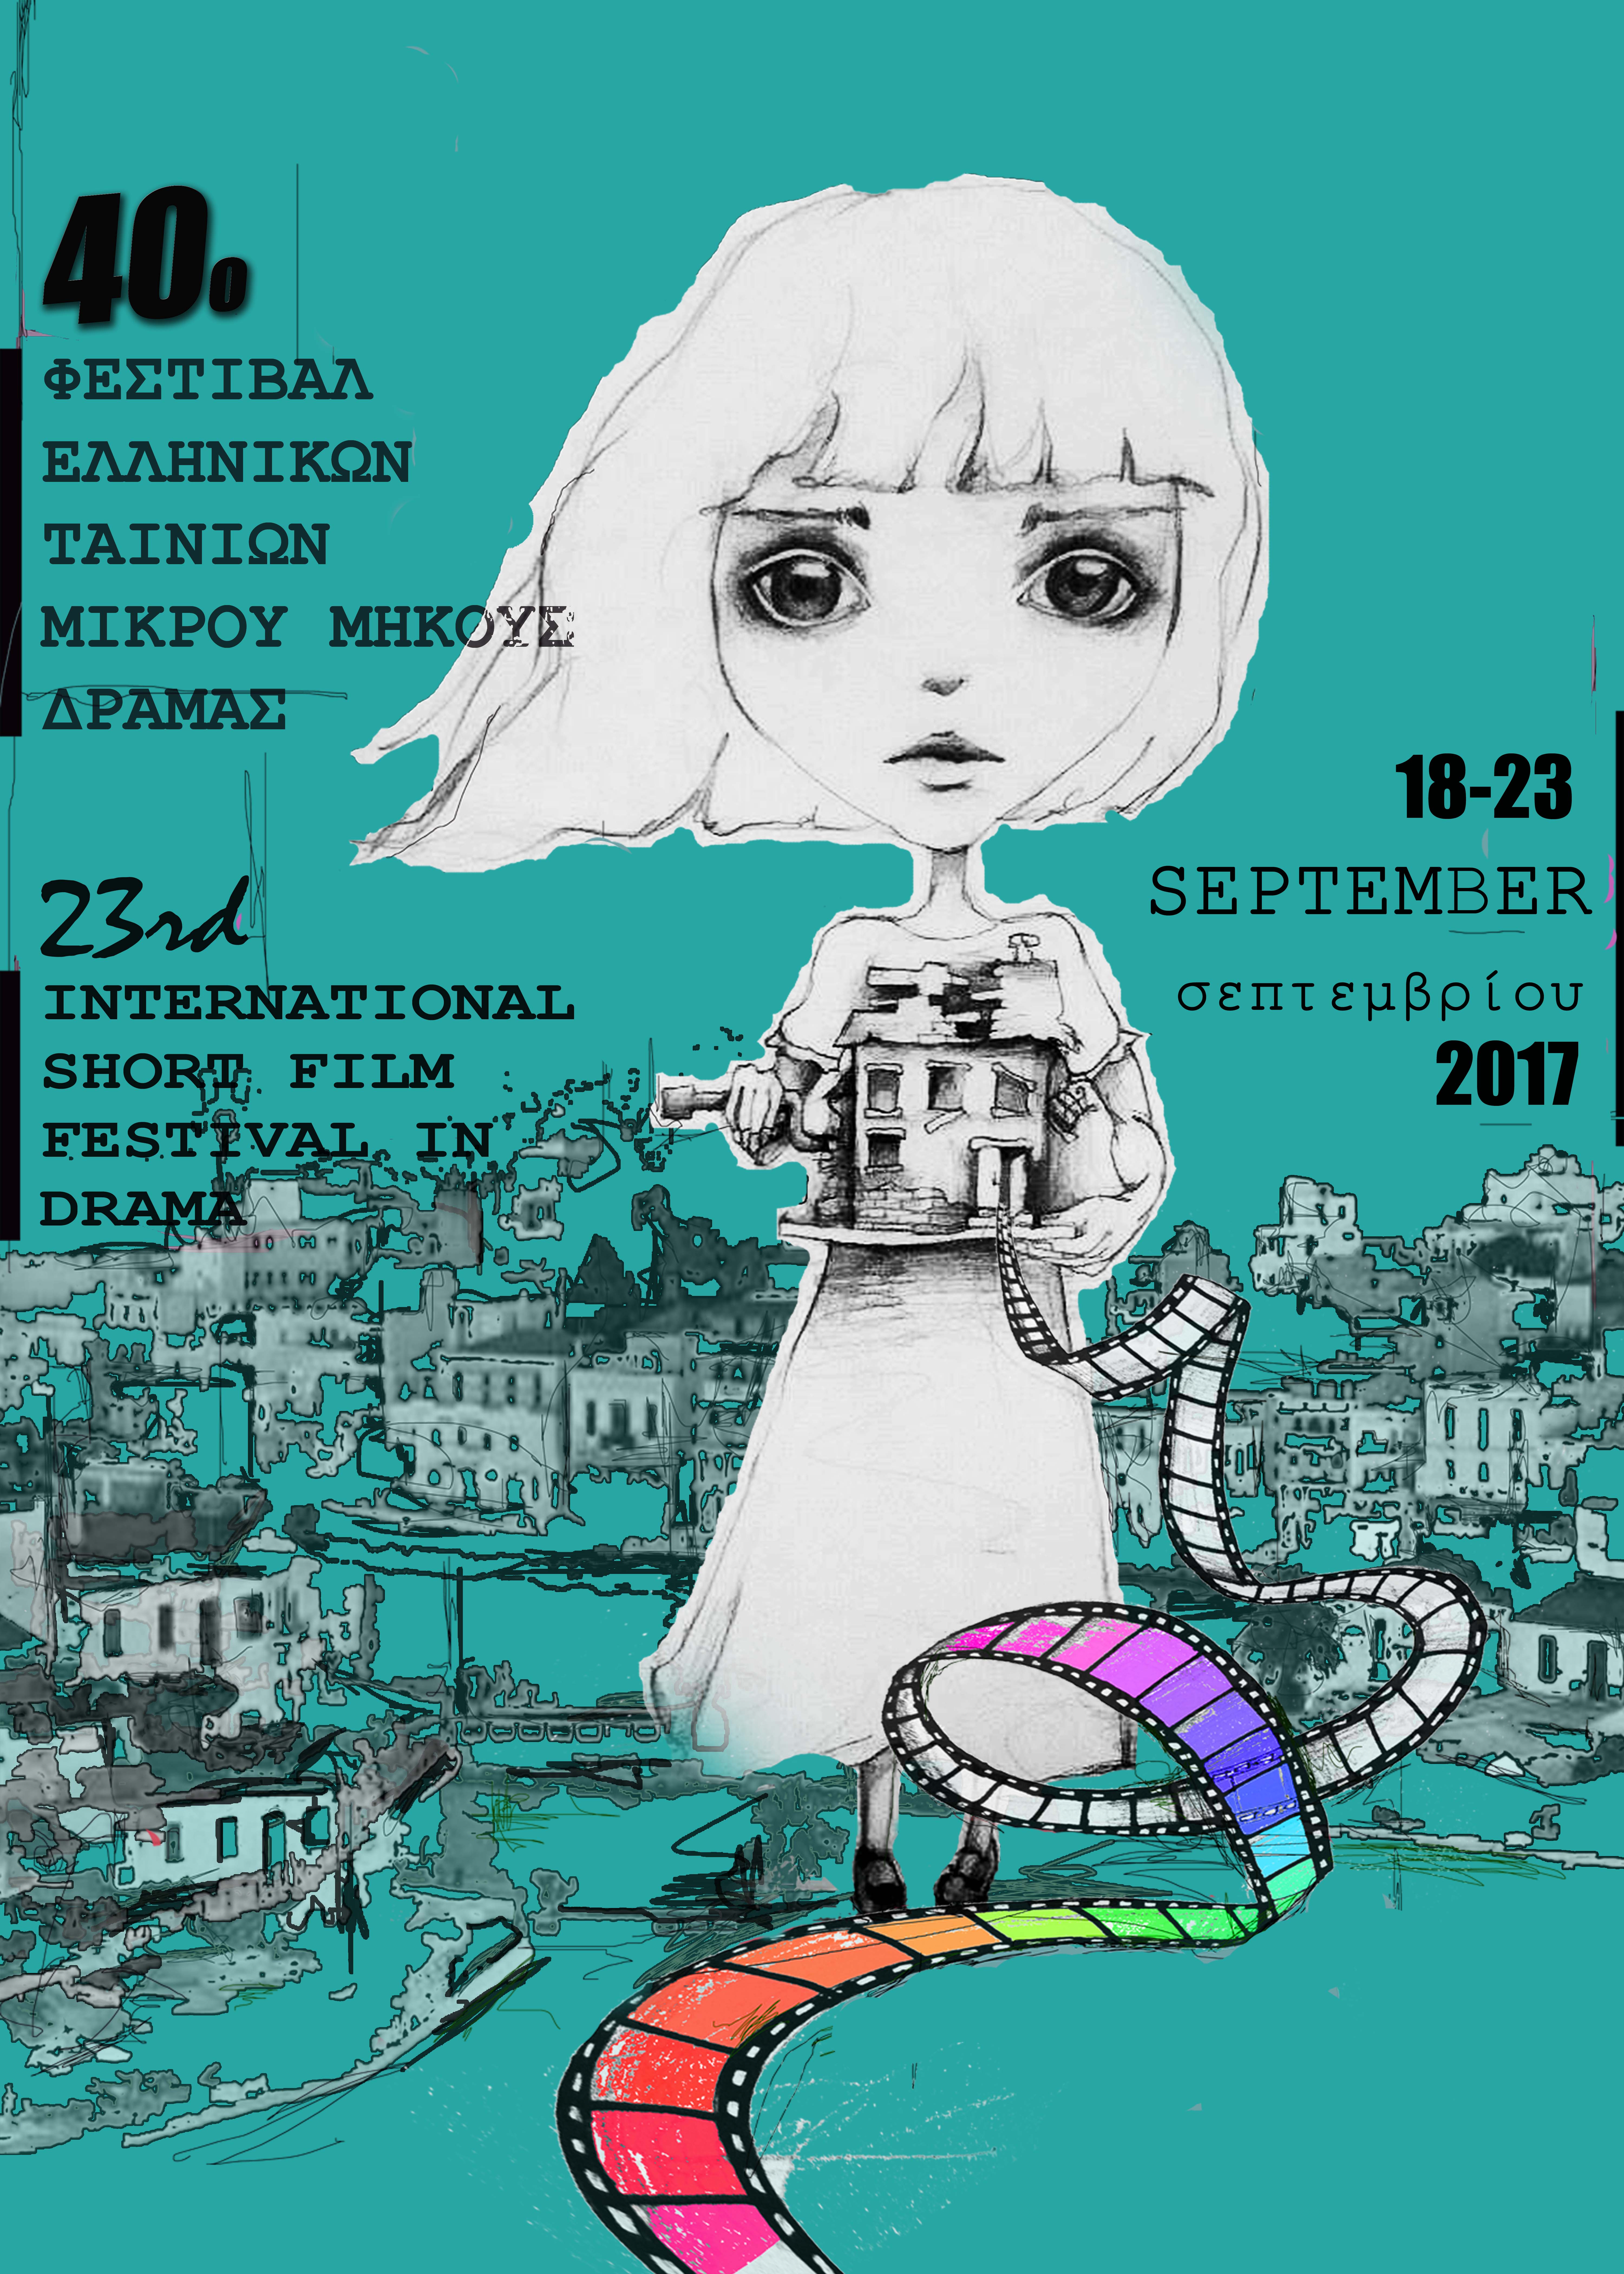 Ρεκόρ συμμετοχών για το Φεστιβάλ Ελληνικών Ταινιών Μικρού Μήκους Δράμας